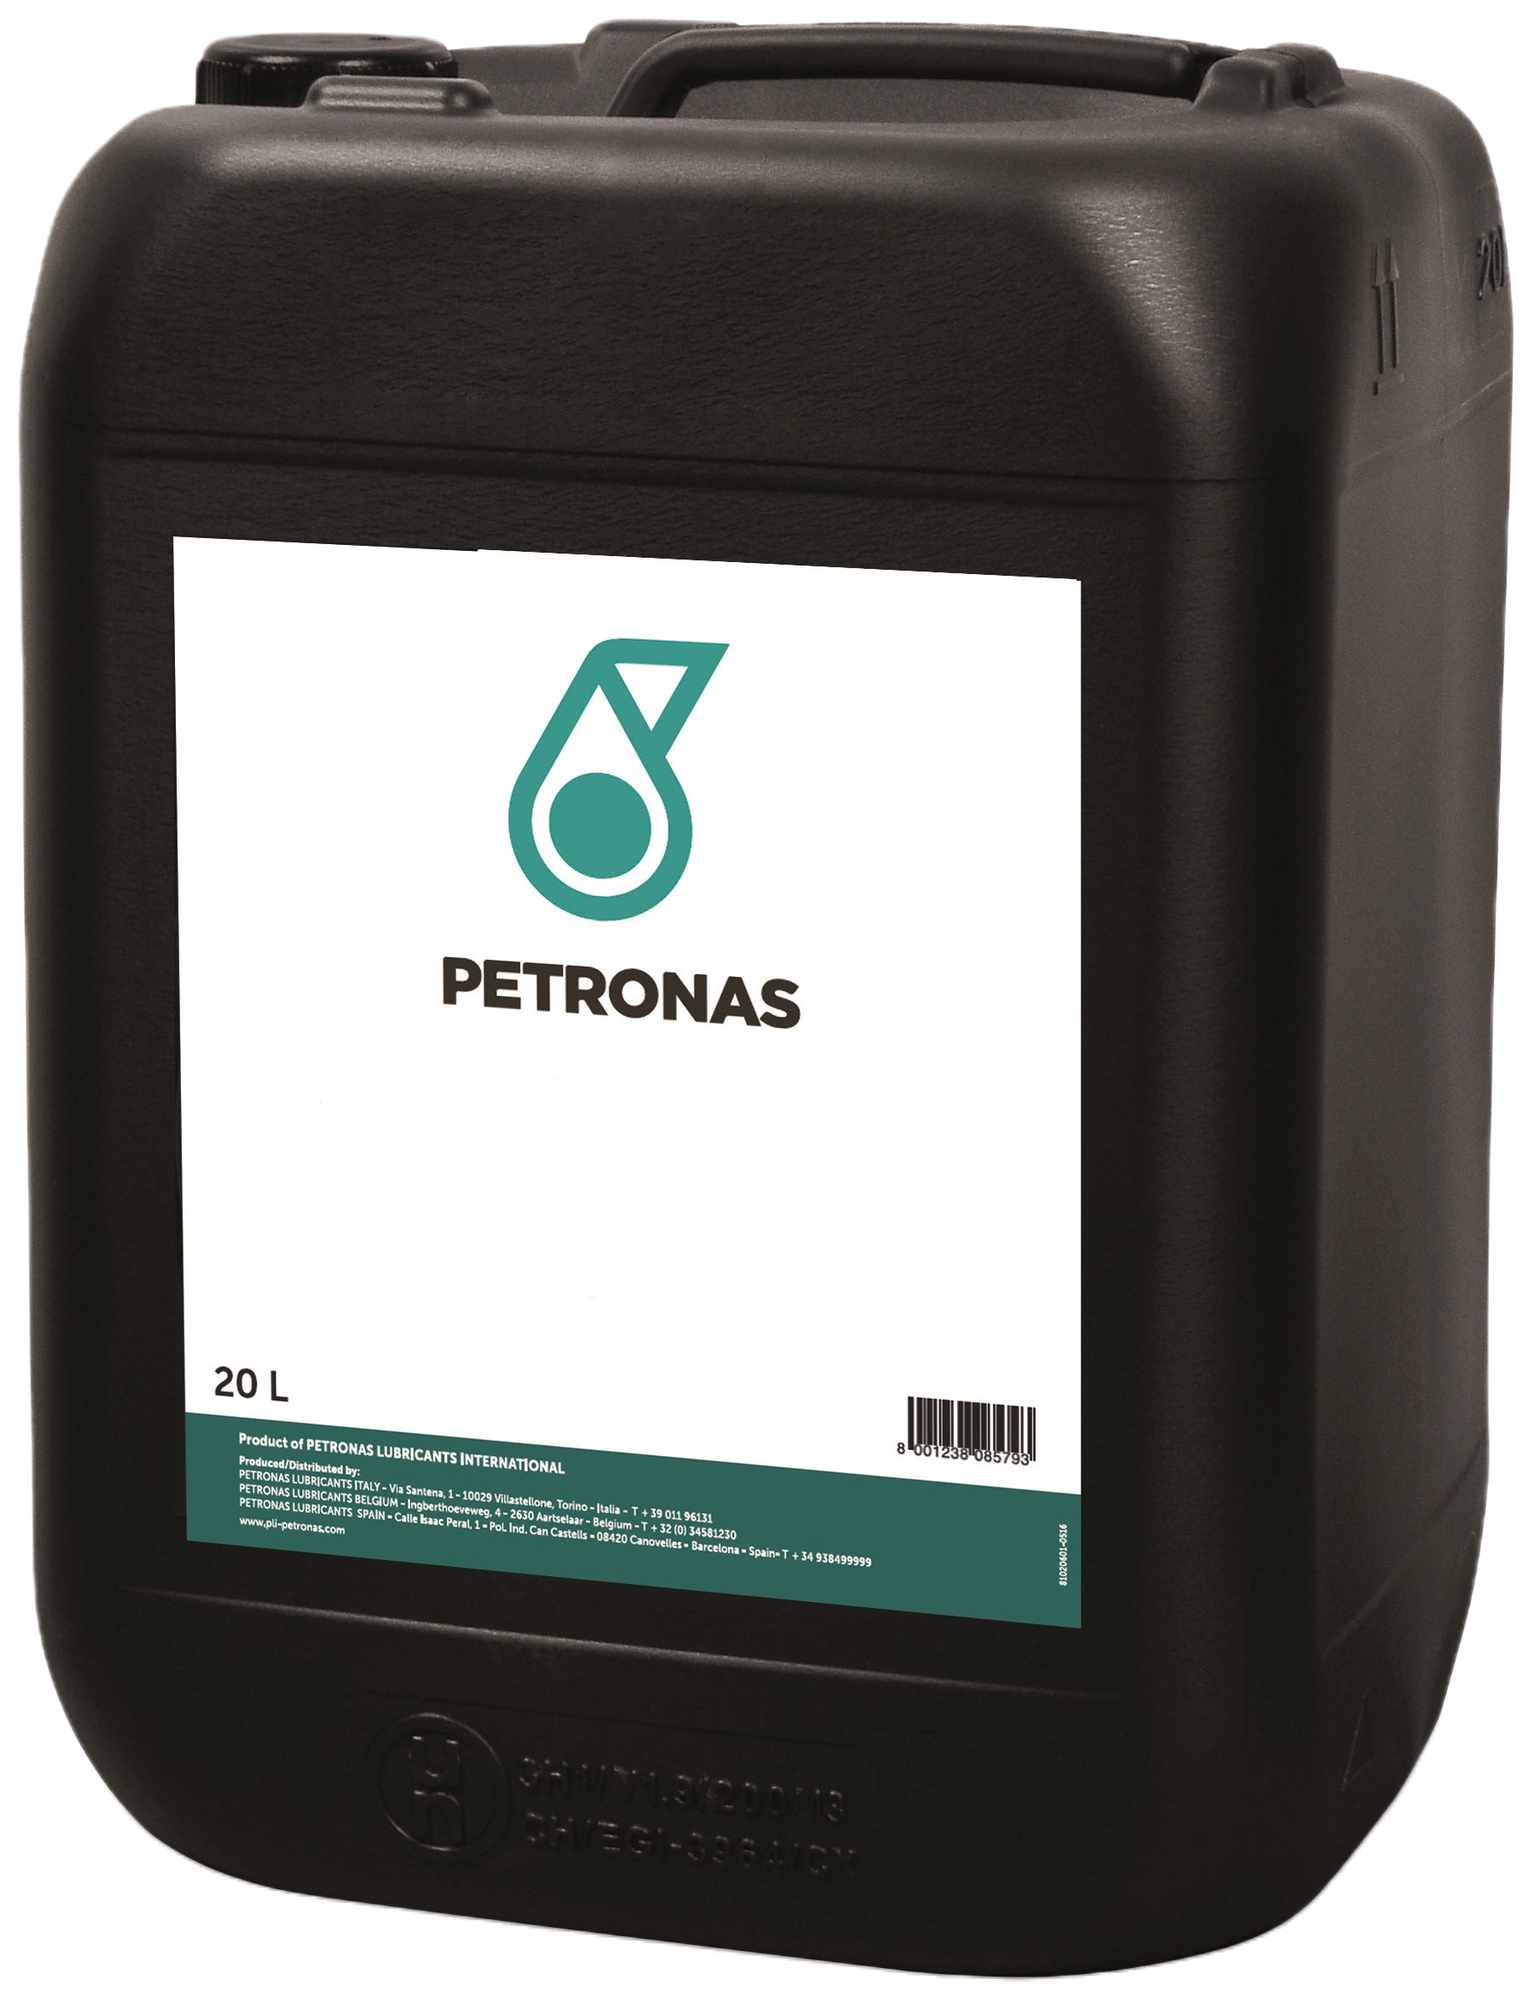 P302P1910-20 Petronas Hydraulic HLPD Serie is een gamma van hydrauliekoliën met zeer hoge prestaties en bescherming tegen slijtage.